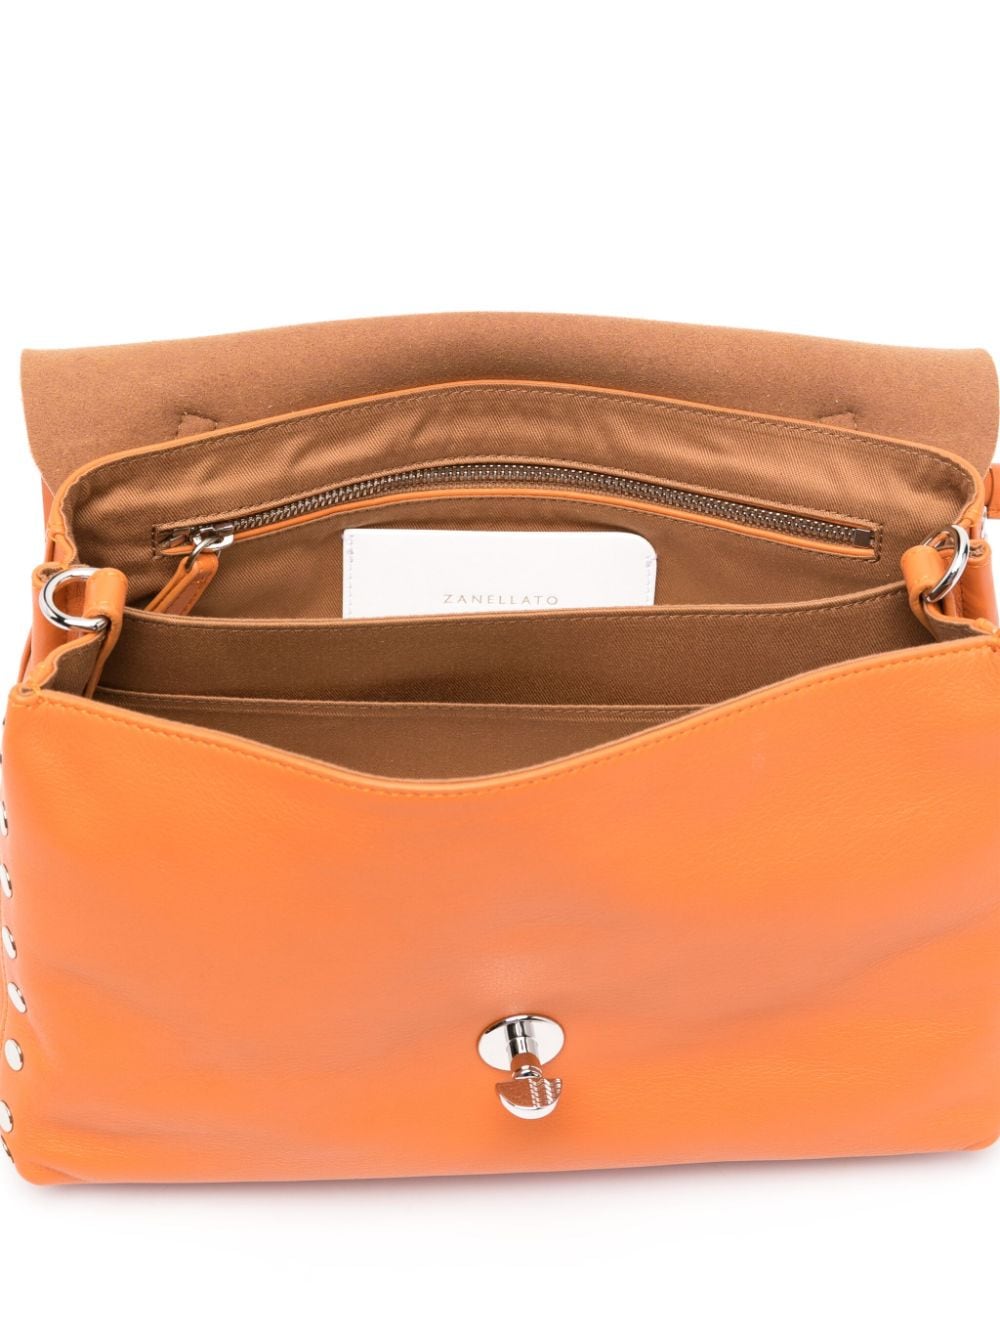 Túi xách da màu cà rốt cam cho phái đẹp